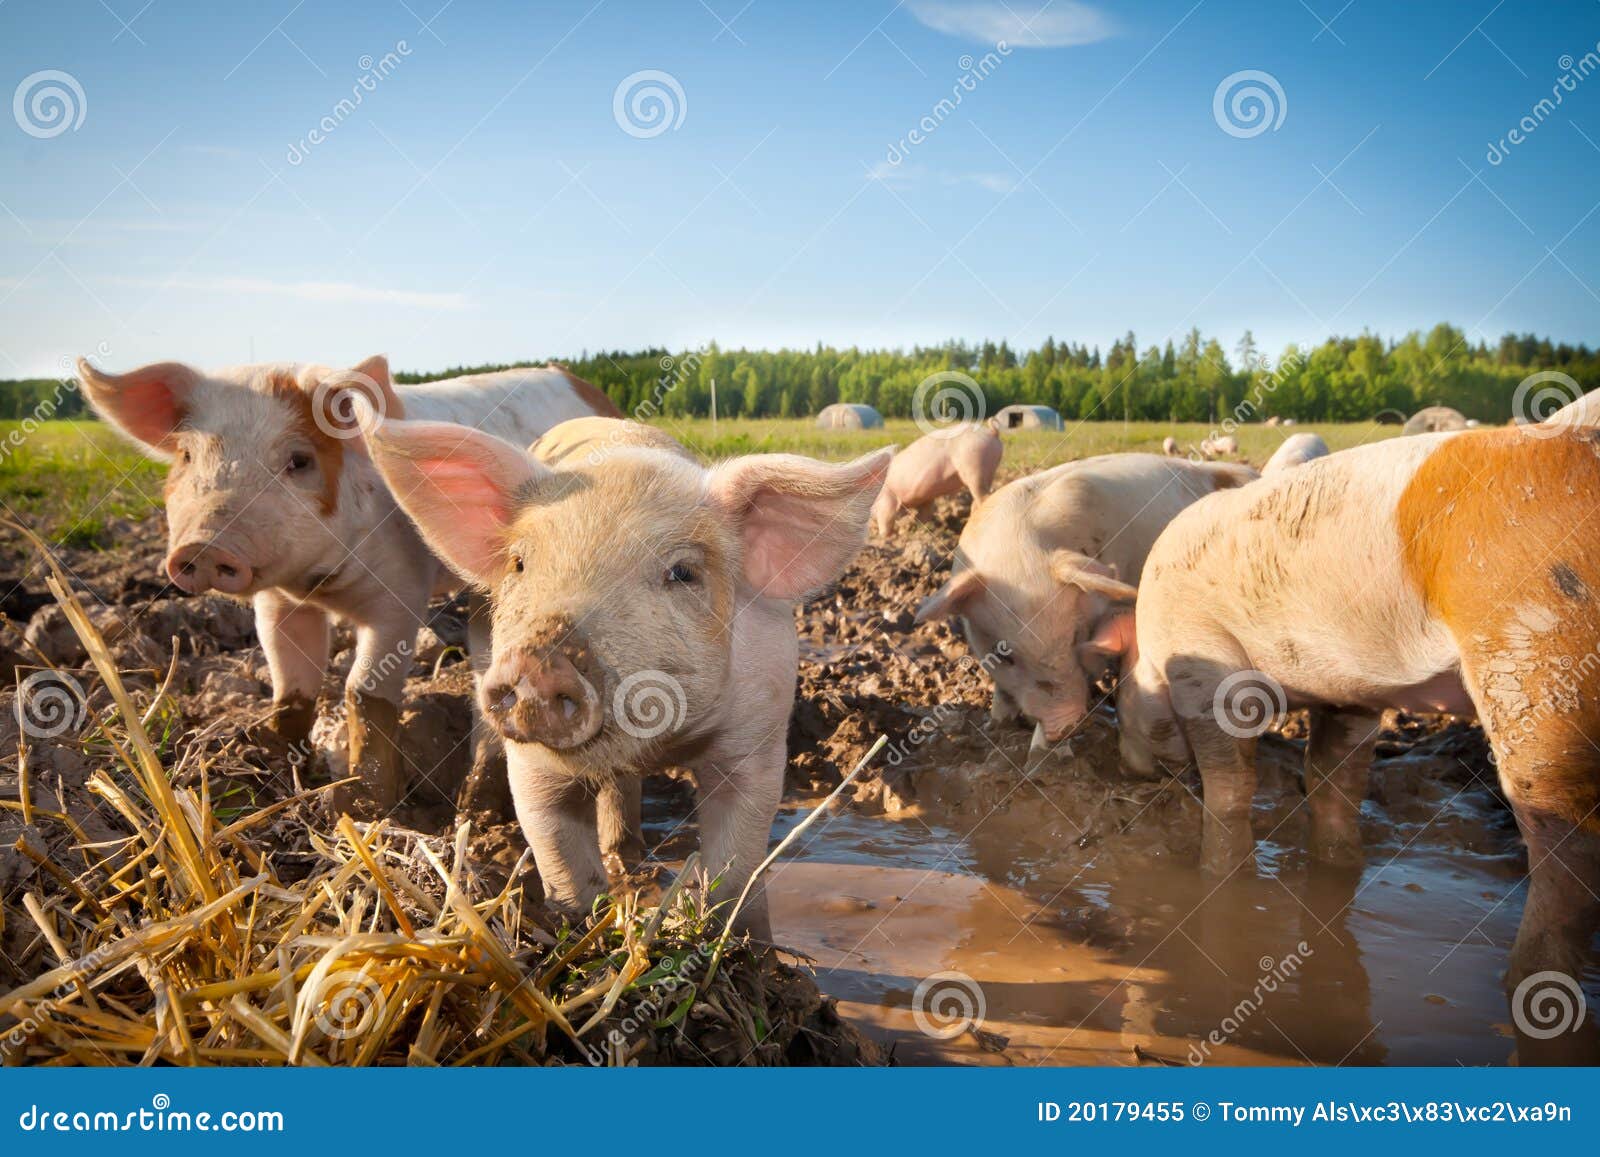 cute pigs